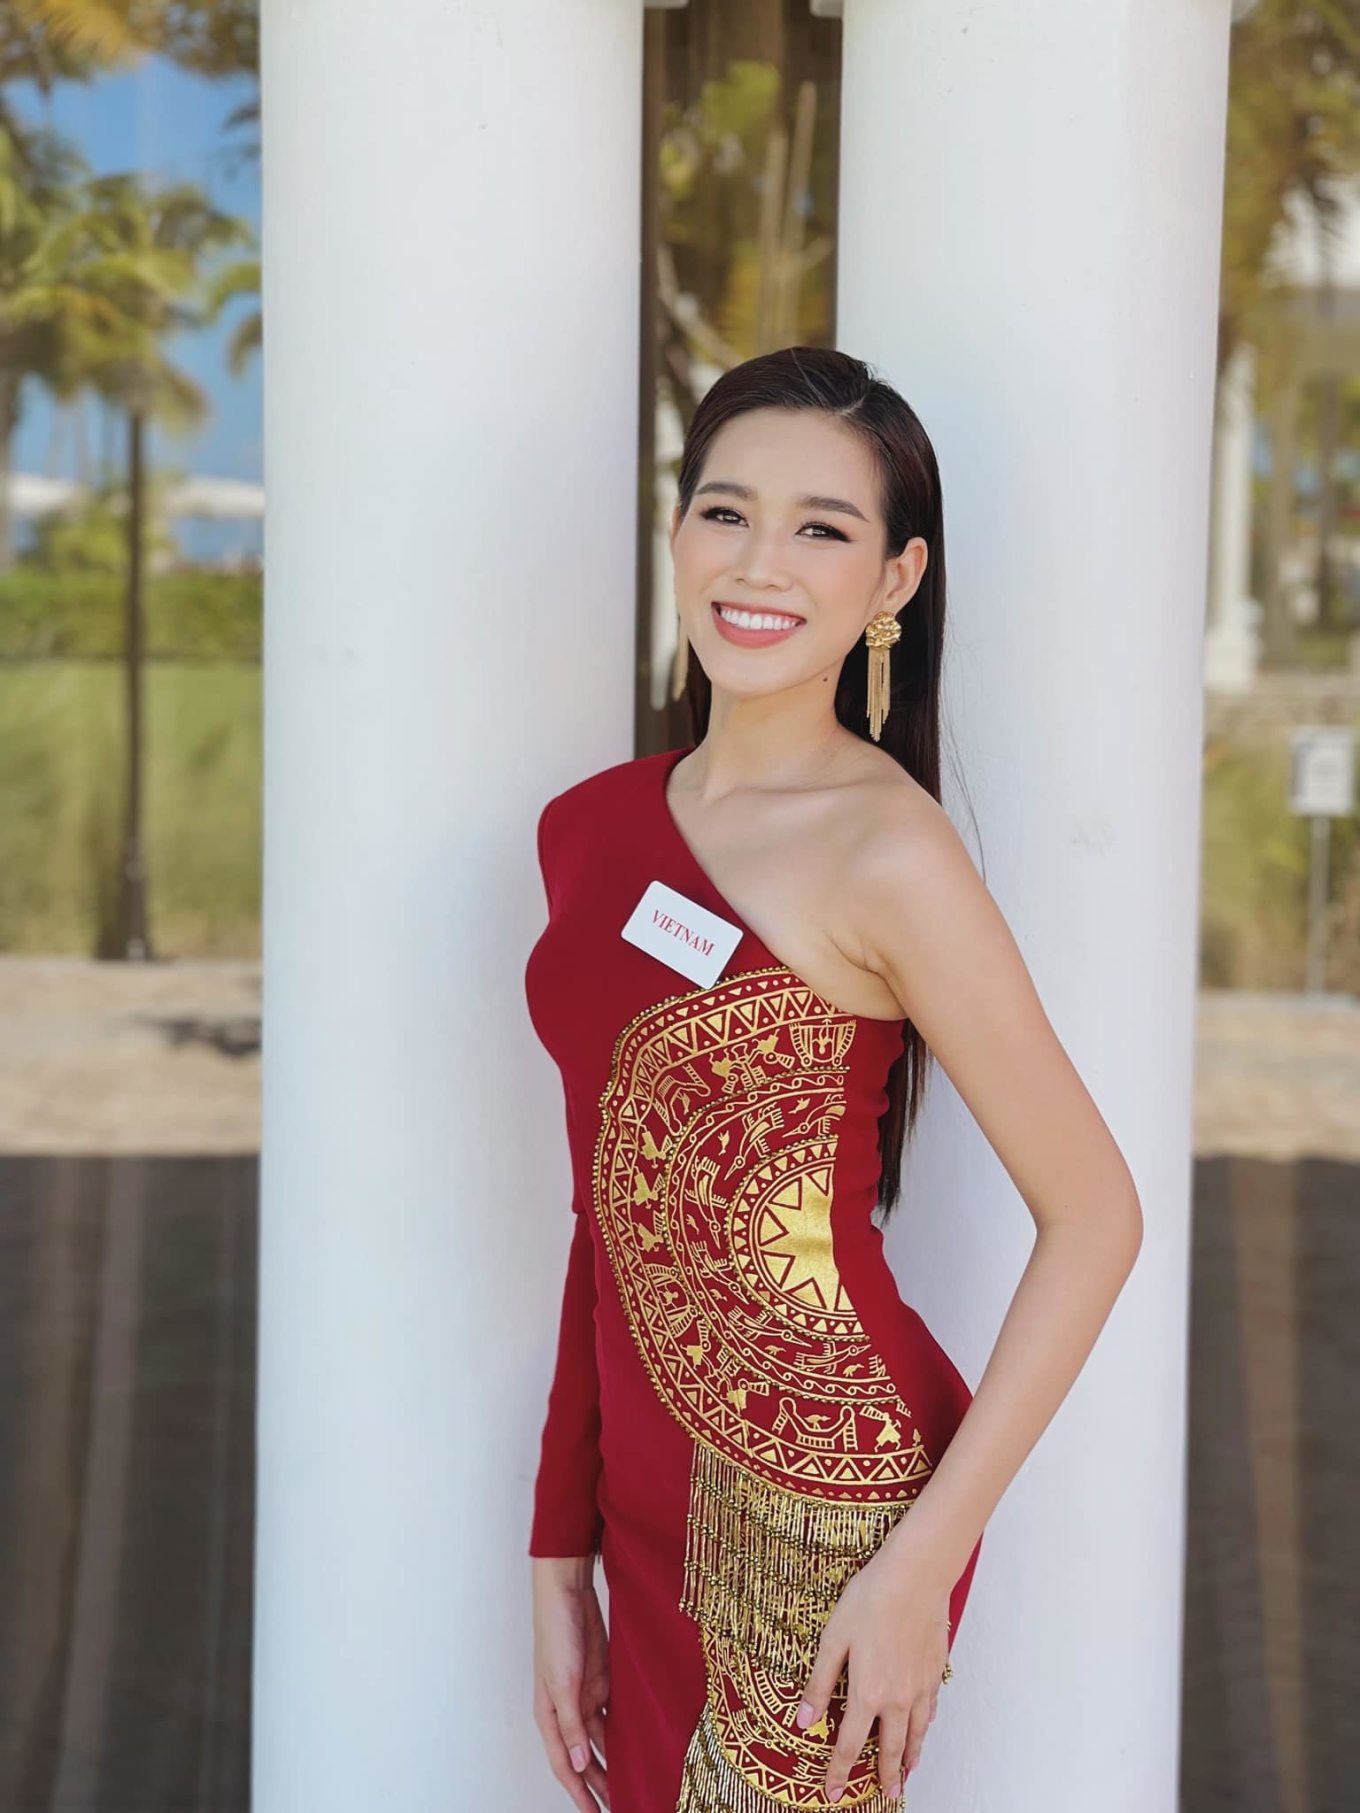 Đỗ Thị Hà xoay váy quá xuất sắc trong Miss World, thế nhưng vẫn thua Lương Thùy Linh điểm này